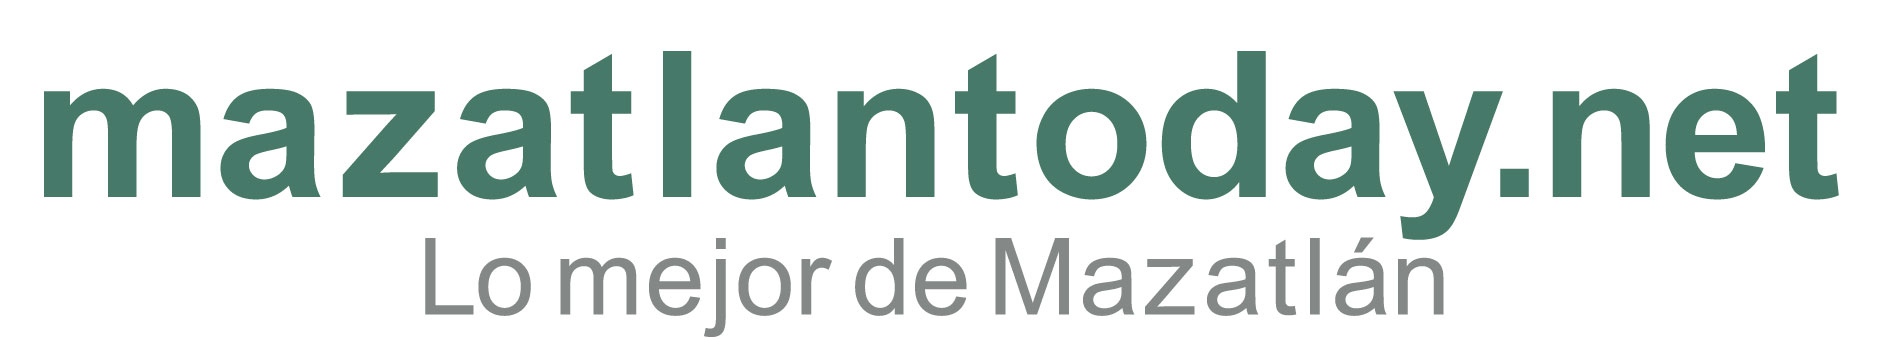 Semana Santa Mazatlan 2024 | mazatlantoday.net presentación de guía de viaje 2023 | INICIO